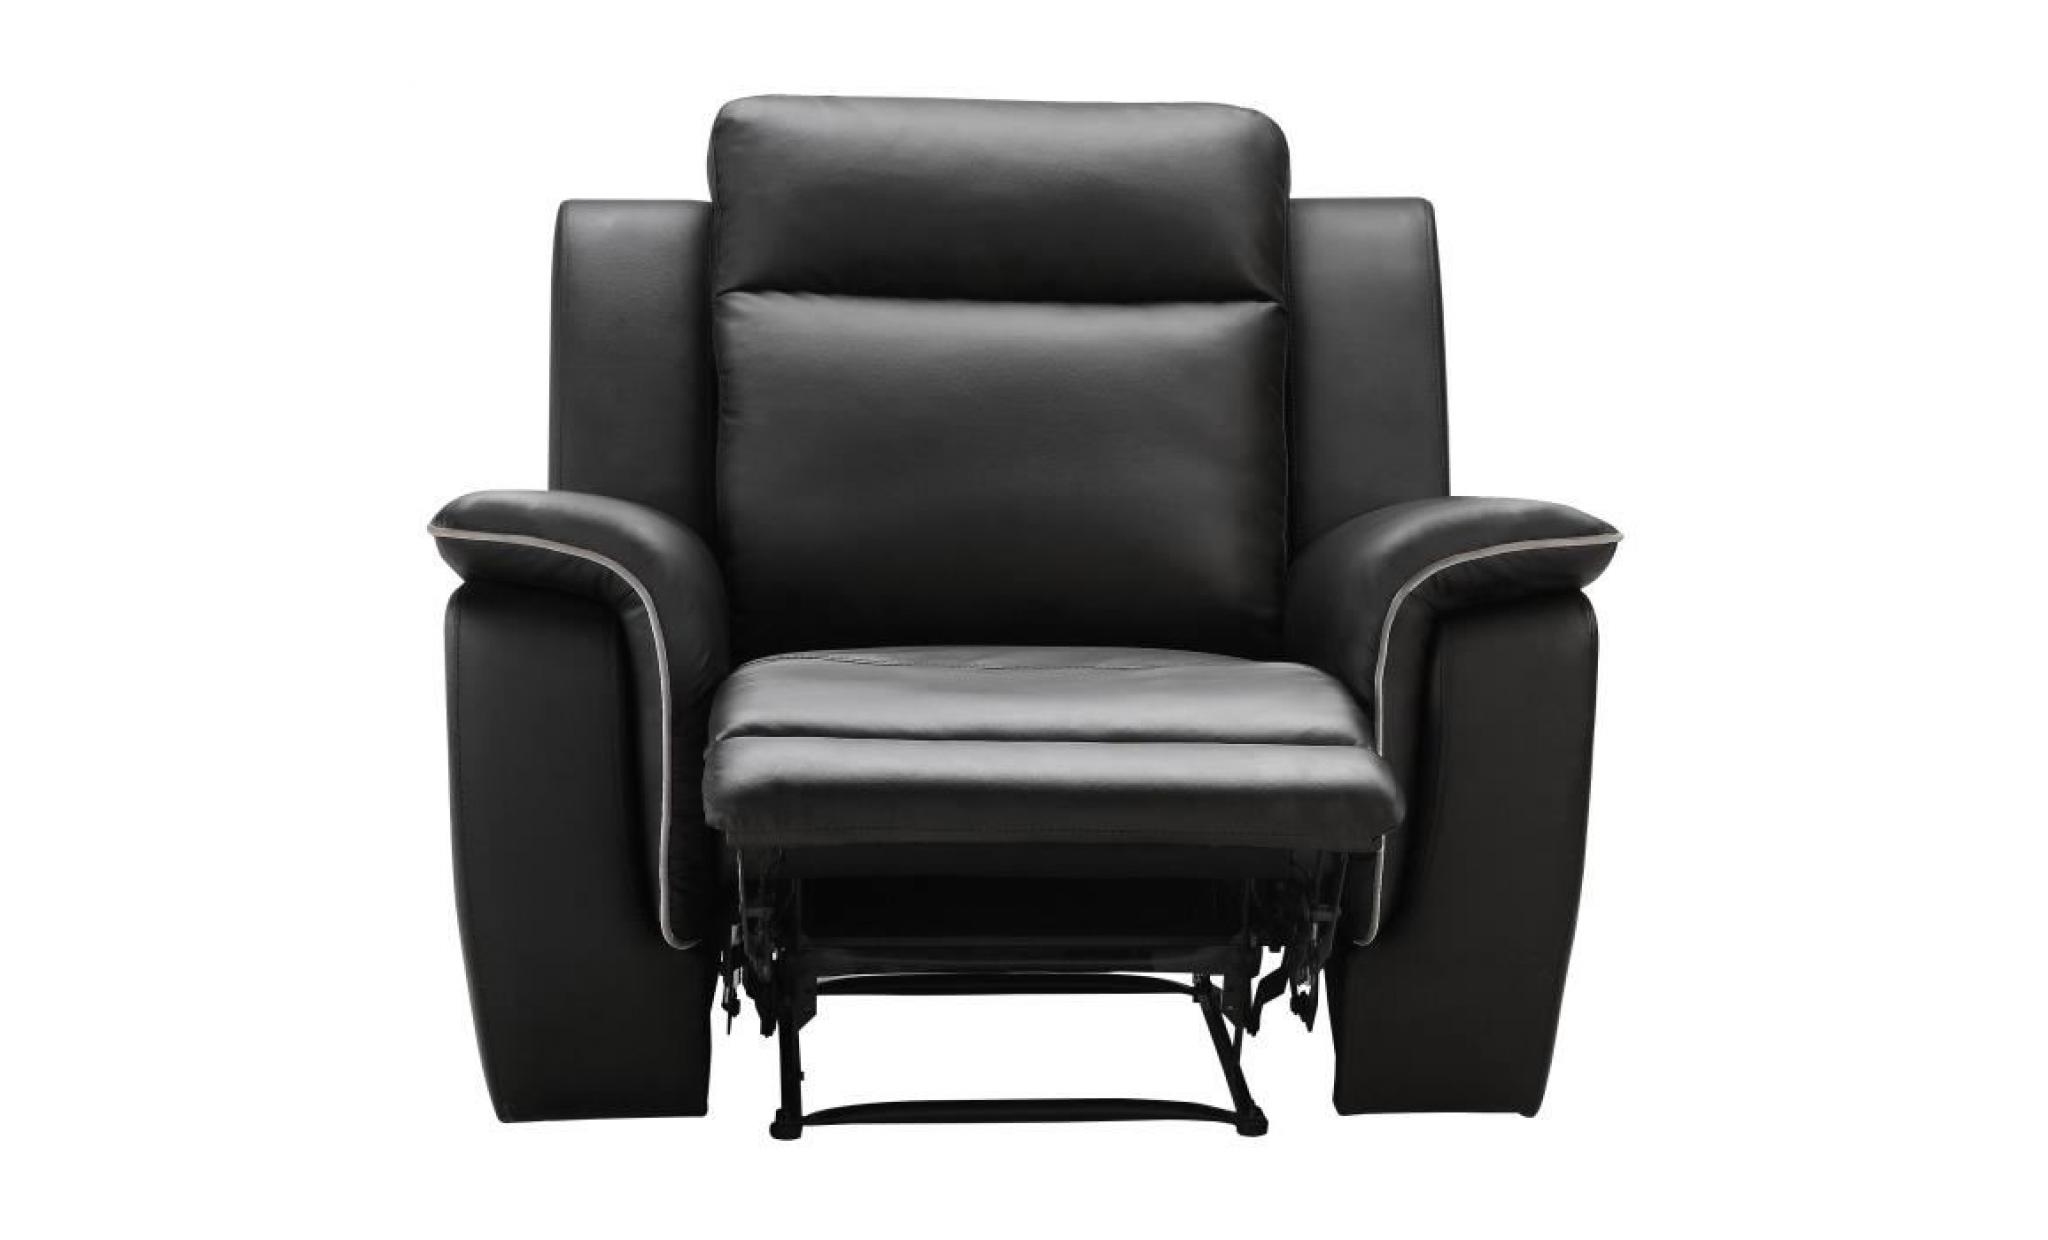 cocoon fauteuil de relaxation   simili noir   contemporain   l 108 x p 96 cm